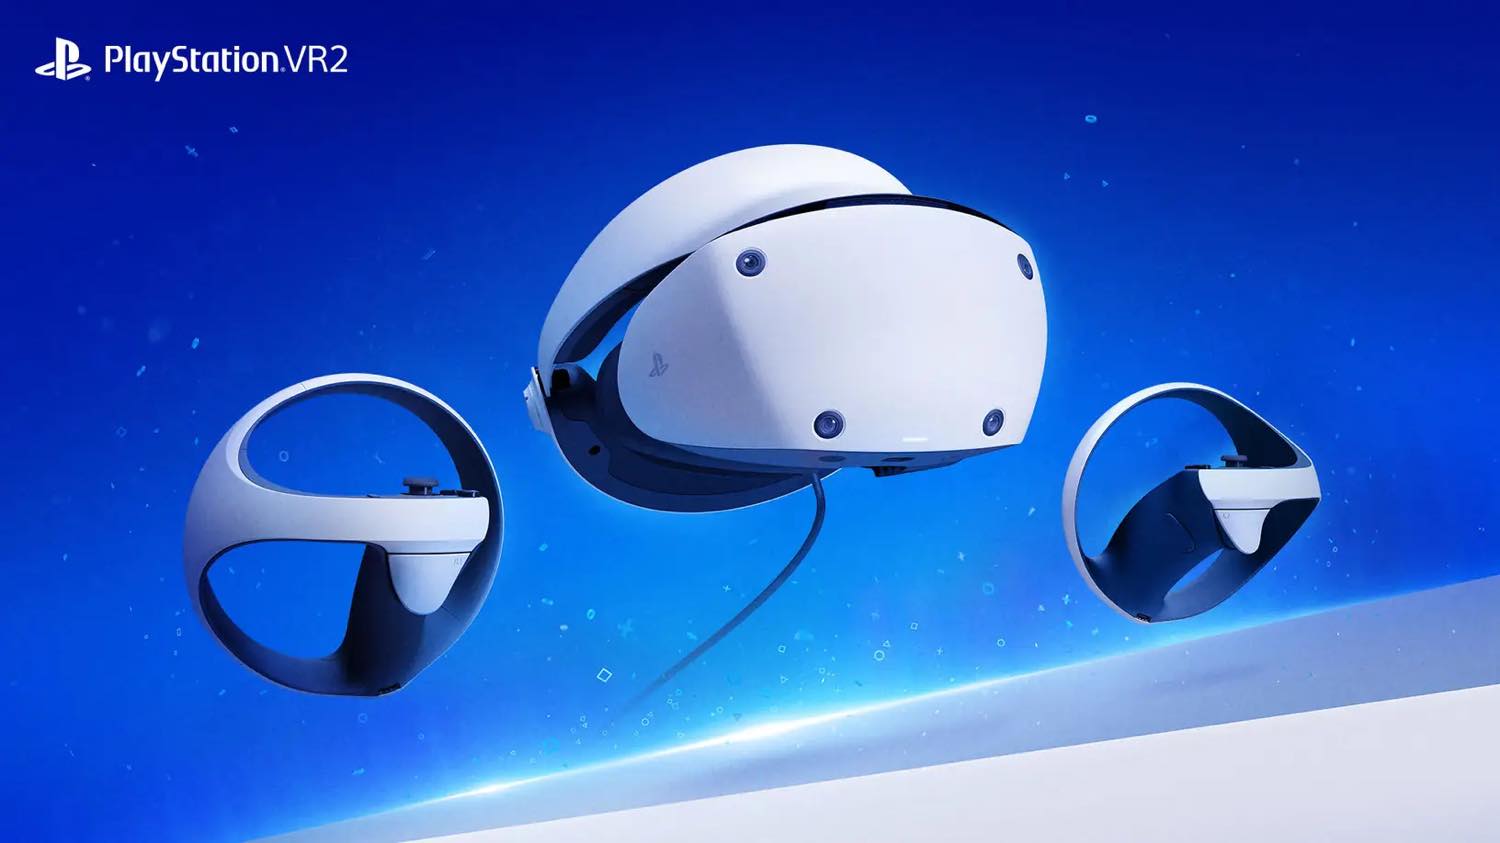 ｢PlayStation VR2｣が年内にPCに対応へ